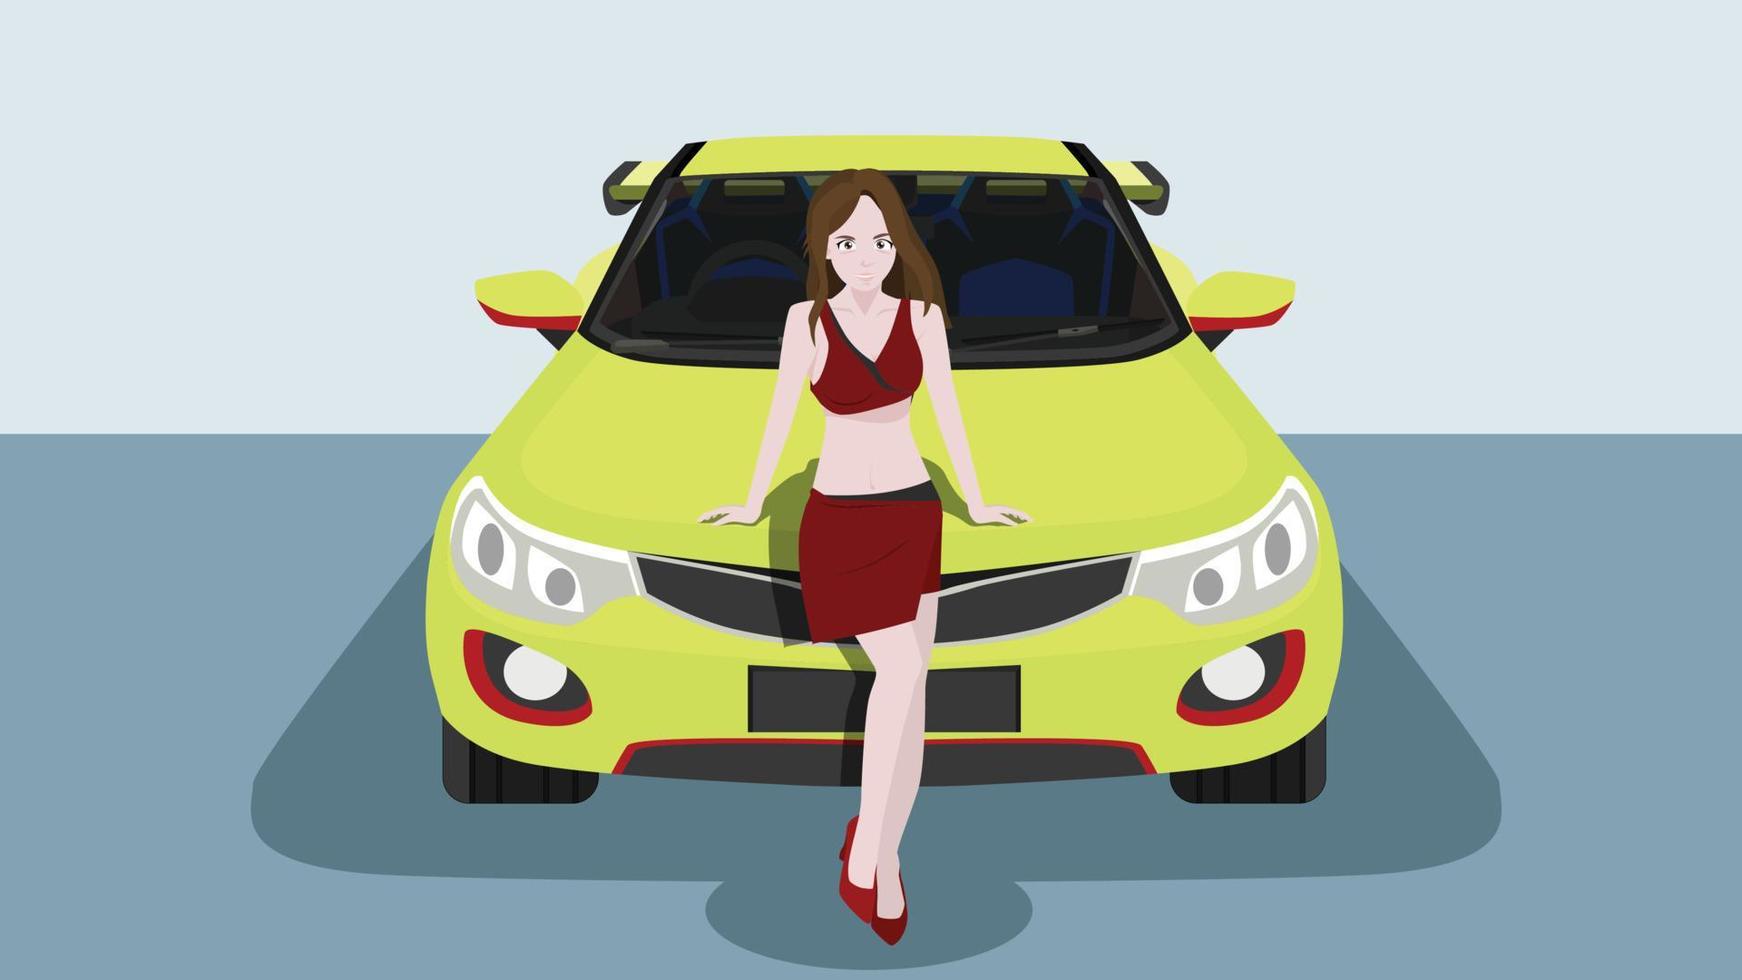 vetor ou ilustração de menina bonita na frente do carro esporte amarelo. dentro da versão interior visível do carro. com fundo de no show room.